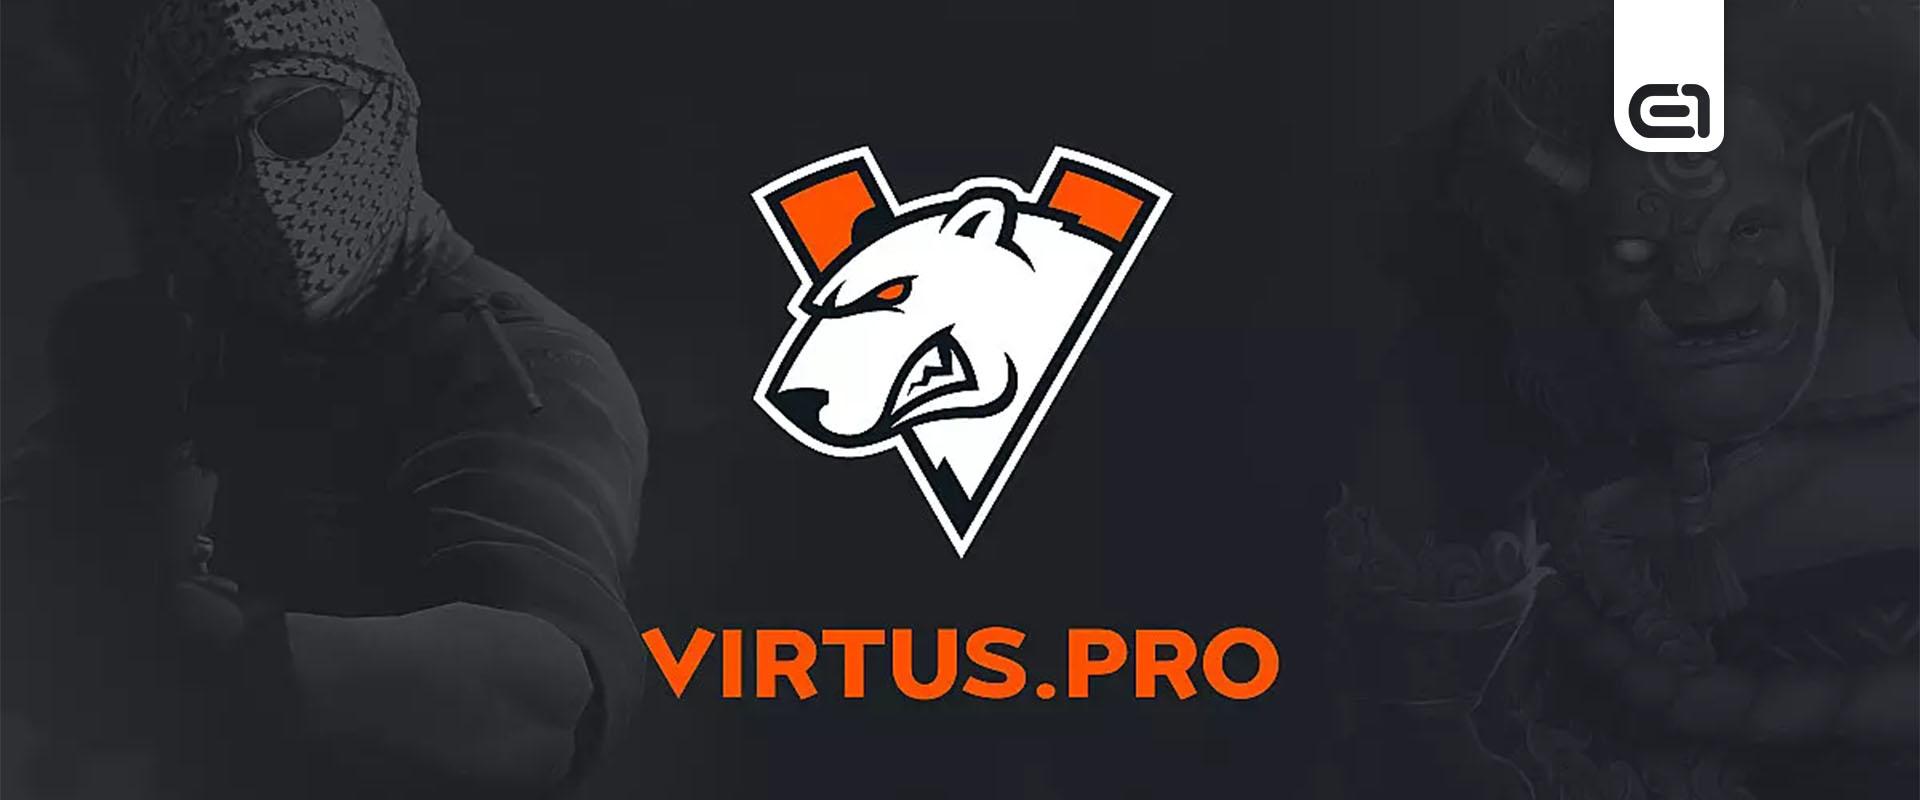 Kiderült, mennyiért adták el a Virtus.pro-t